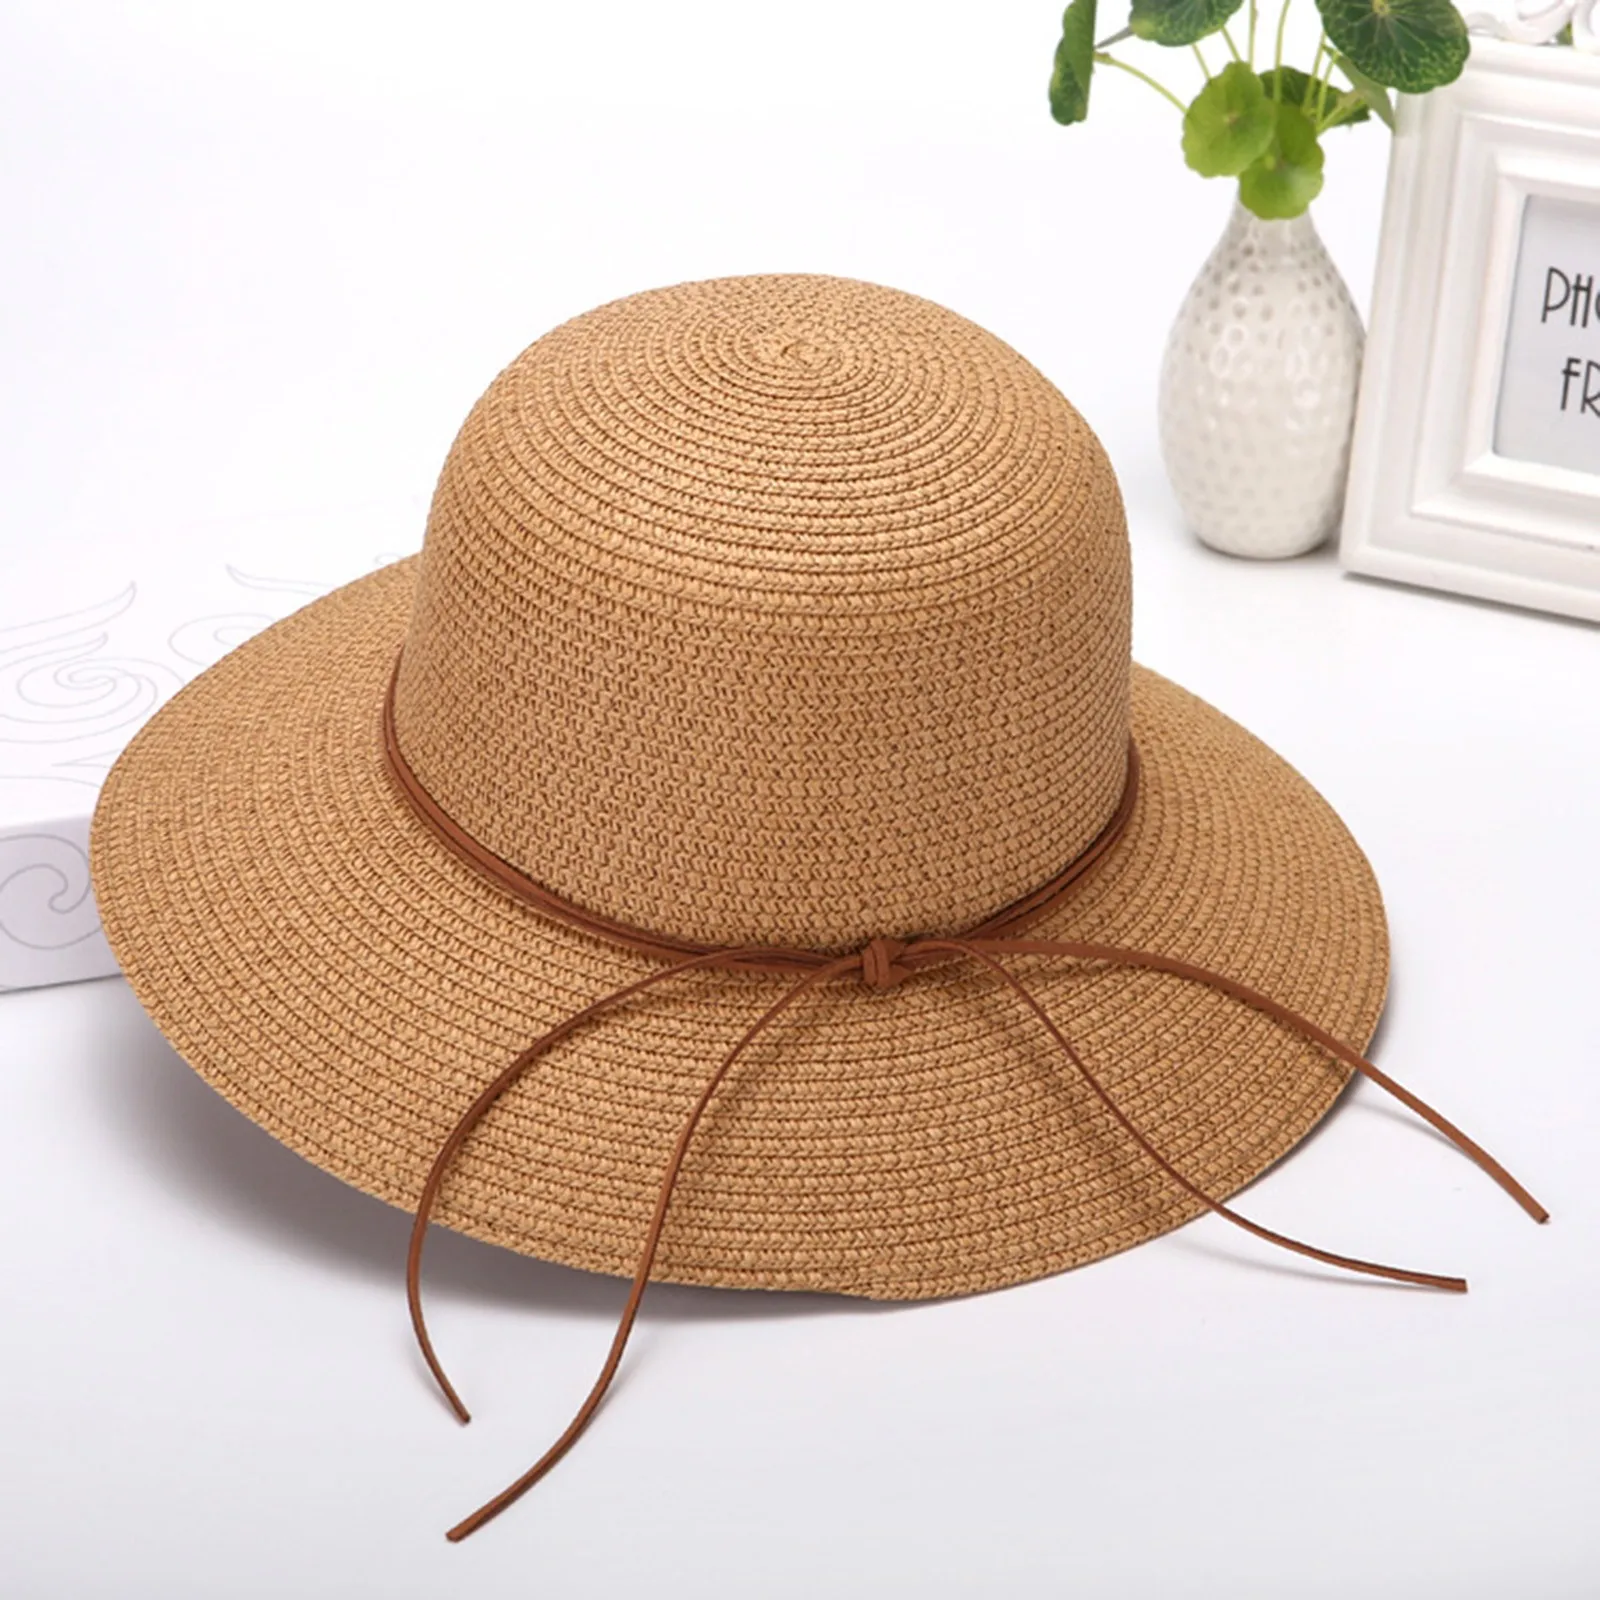 נשים קיץ רחב כובע קש חוף מתקפל שמש כובעים רפוי להפשיל סאן קאפ UPF 50+ כובעי בייסבול החוף כובעים גברים2